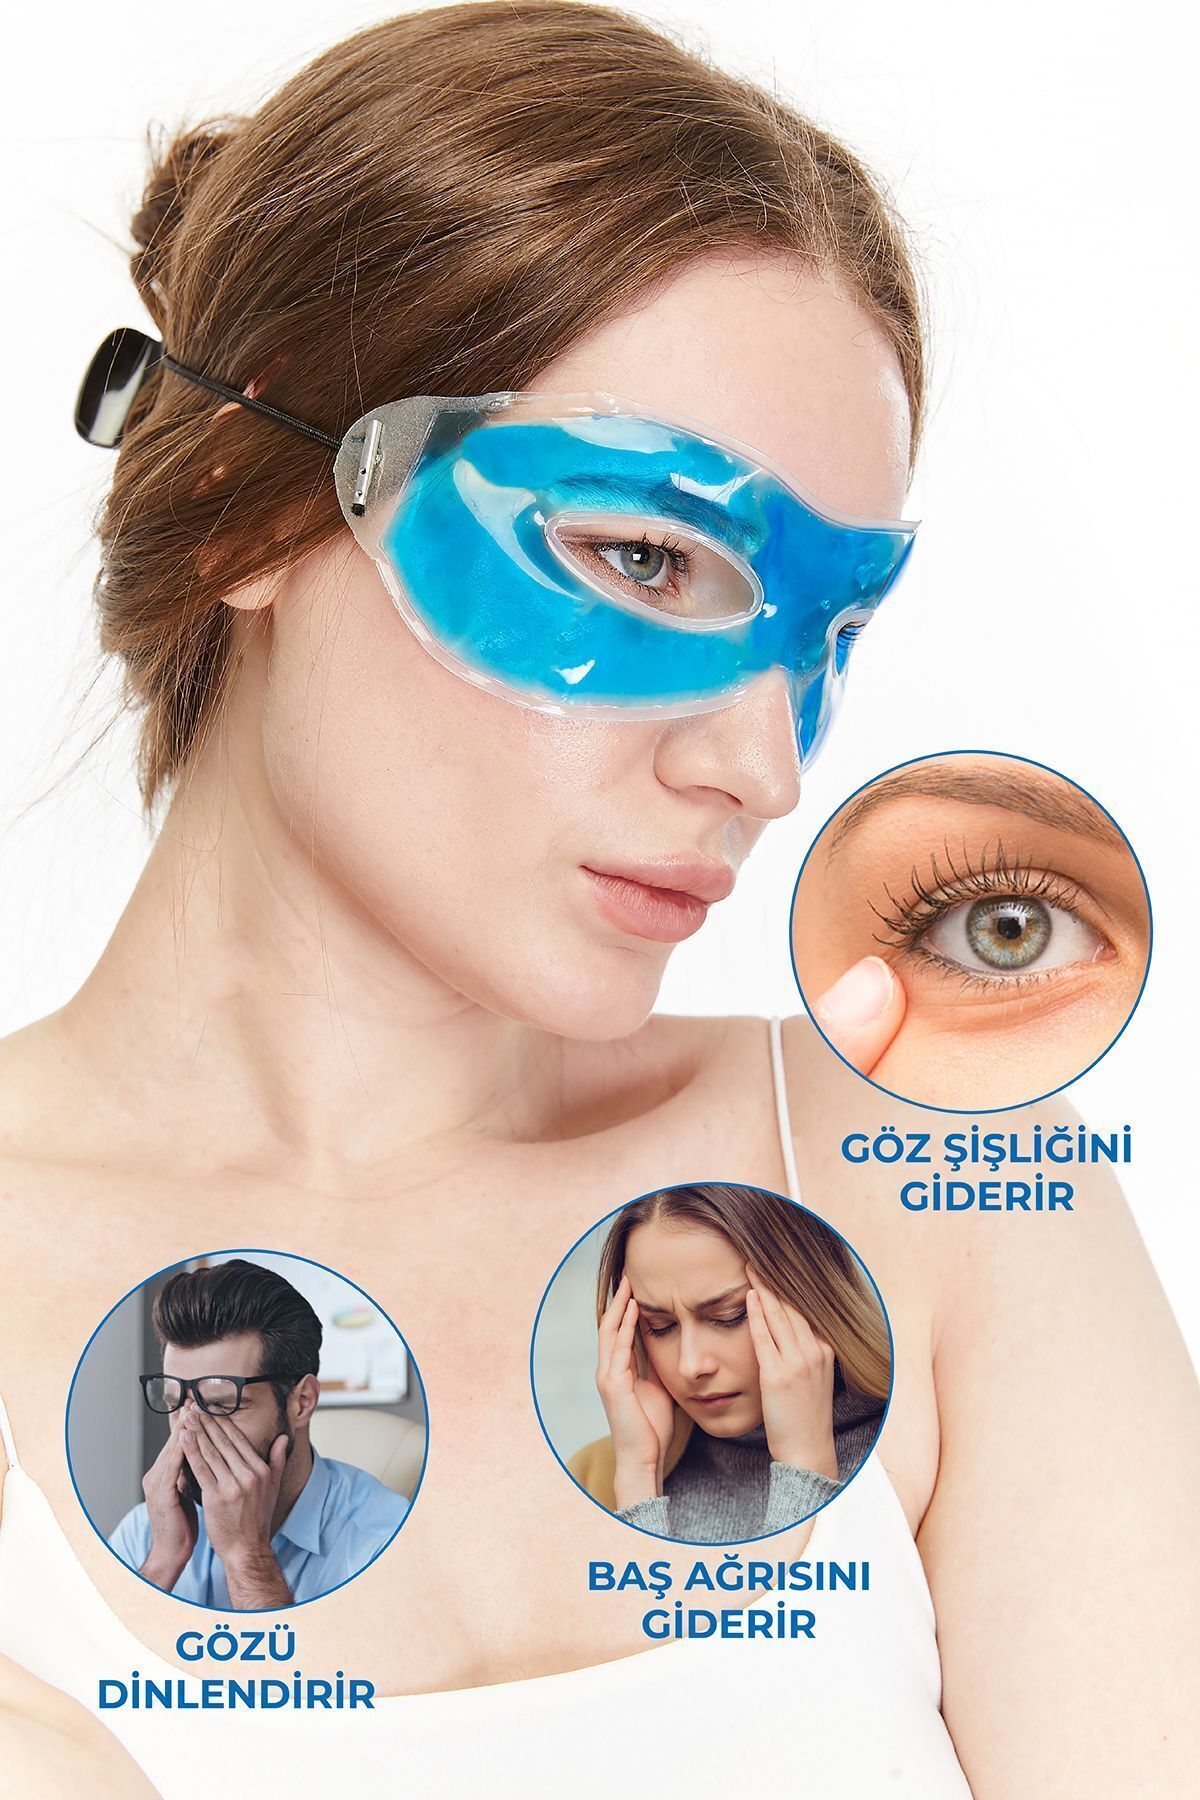 Flexy Medical Göz Maskesi Jel Gözaltı Torbası Morluk Kırışık Ağrı Önleme Göz Dinlendirici Soğuk Termojel